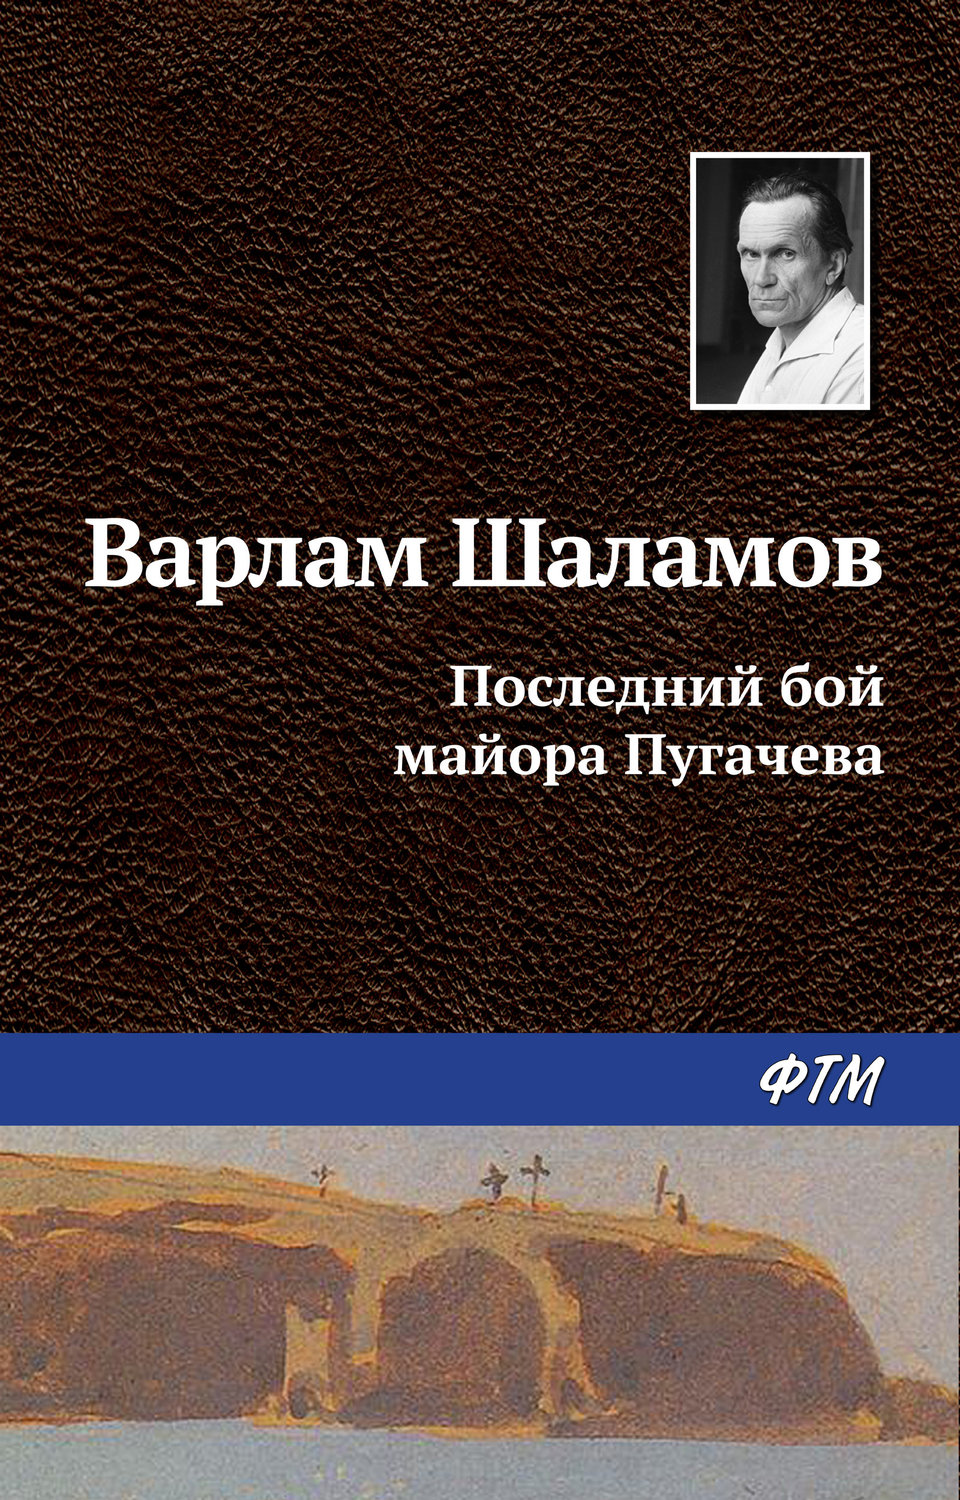 Скачать бесплатно книгу шаламова колымские рассказы